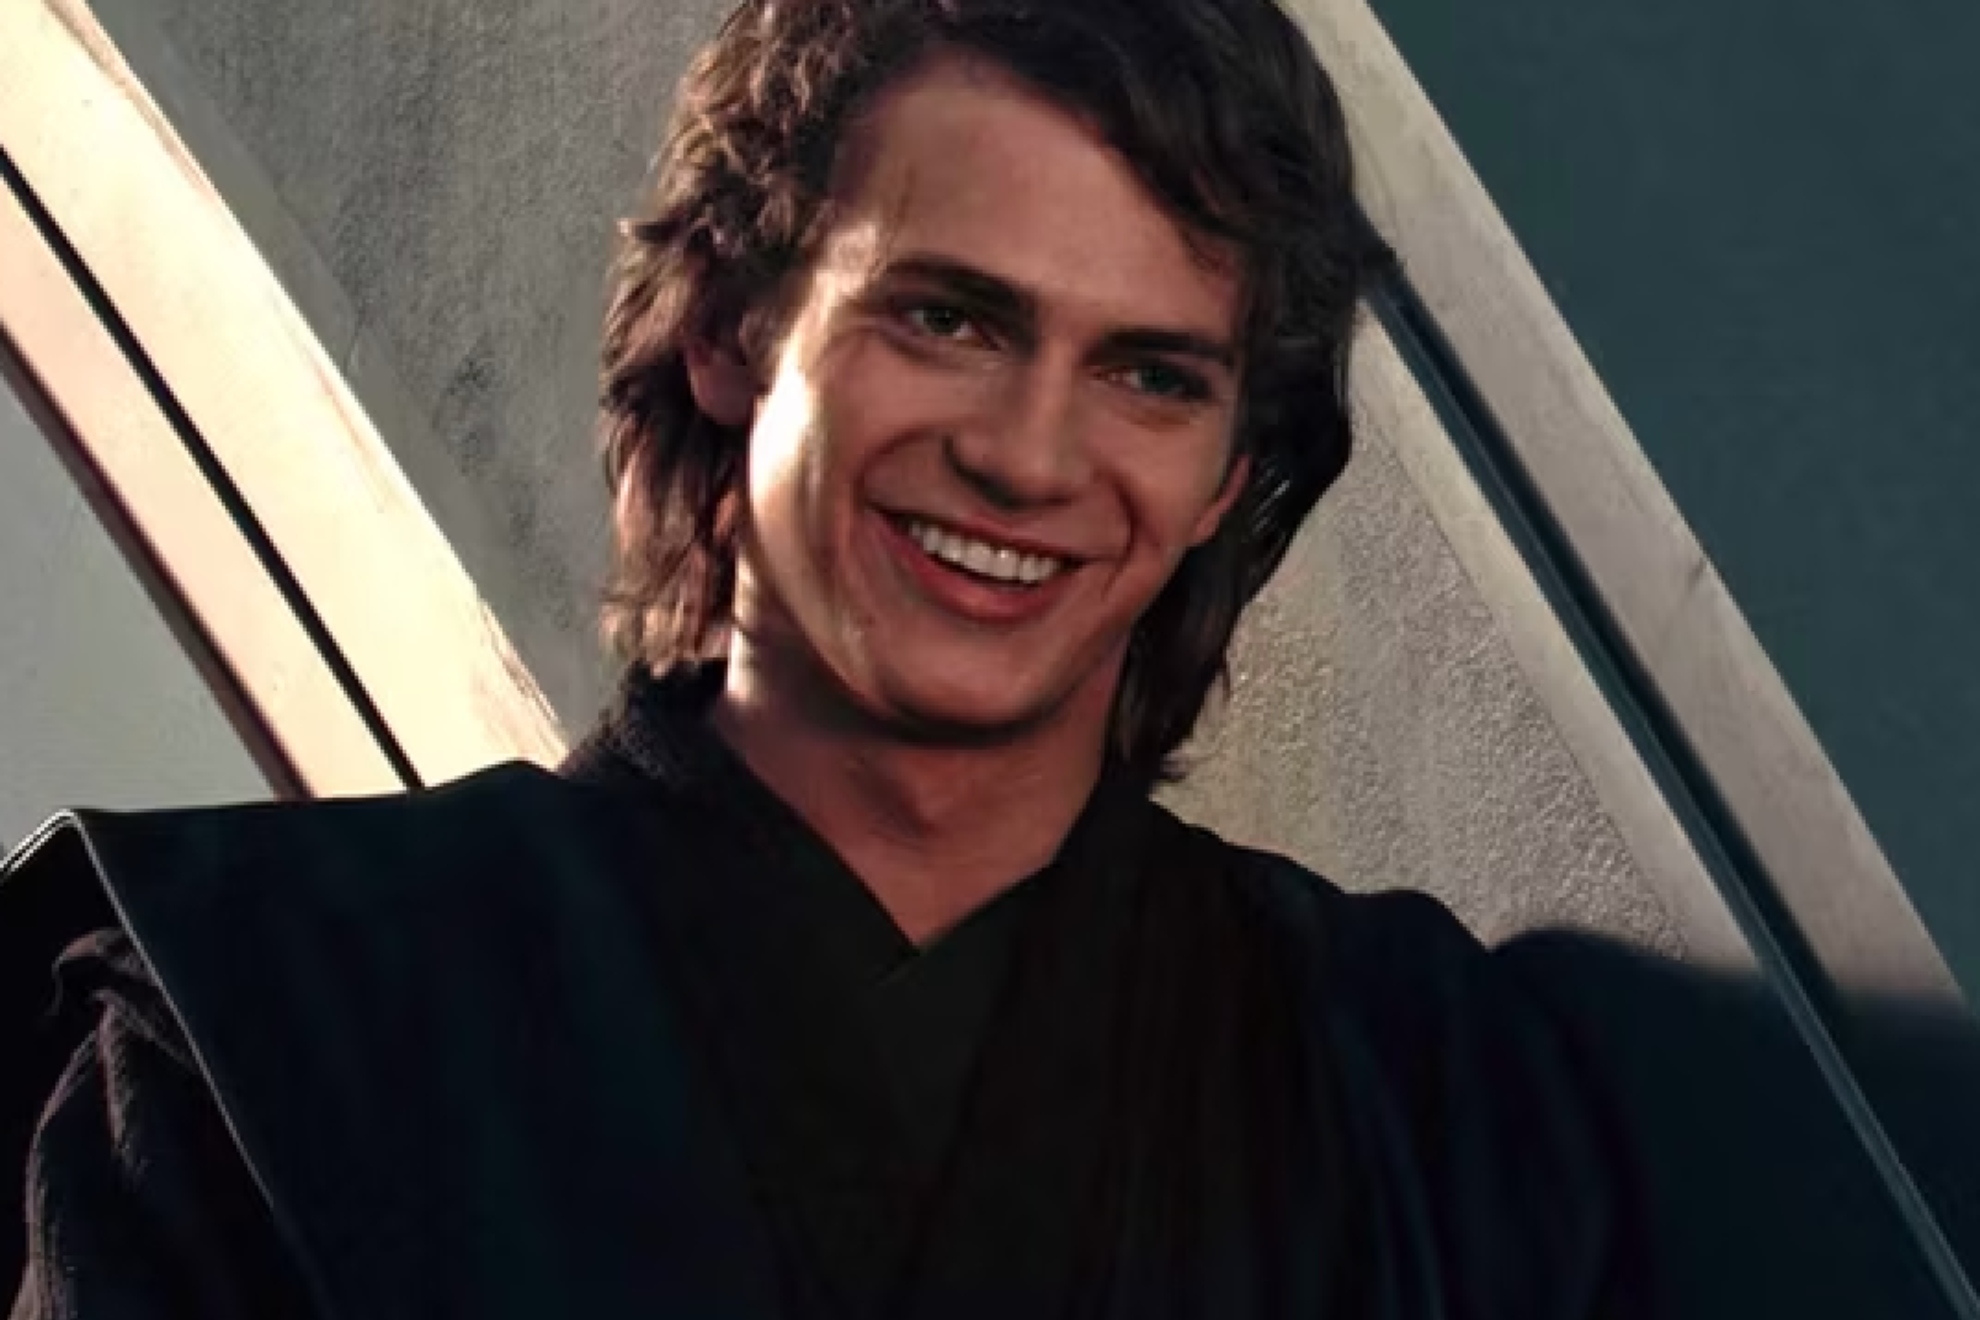 Hayden Christensen in the role of Anakin Skywalker.